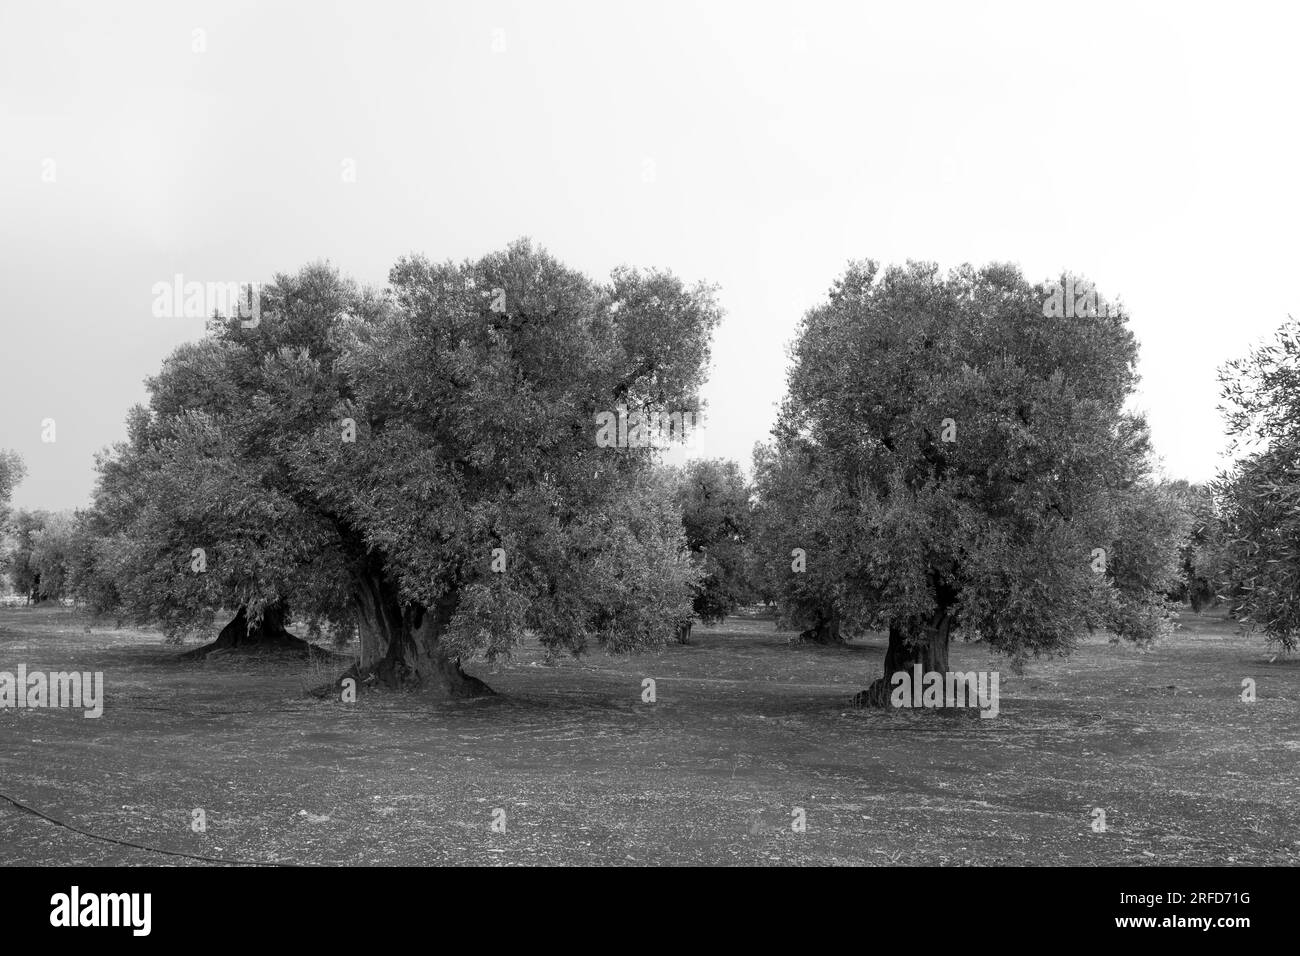 Olive groves in Puglia (Apulia), Italy Stock Photo